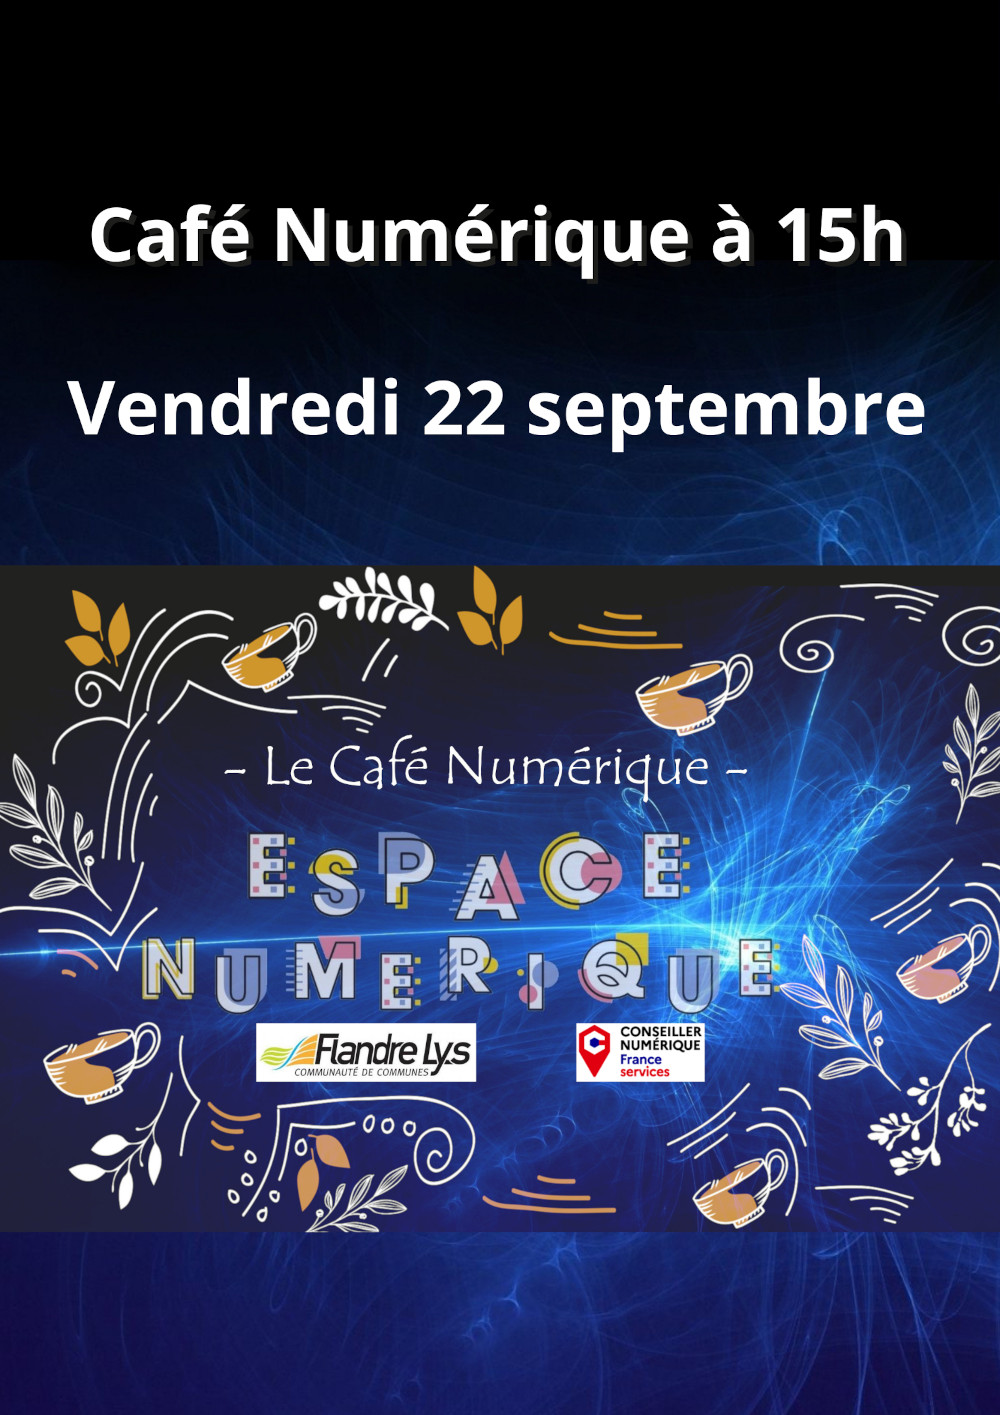 Le Café Numérique vendredi 22 septembre